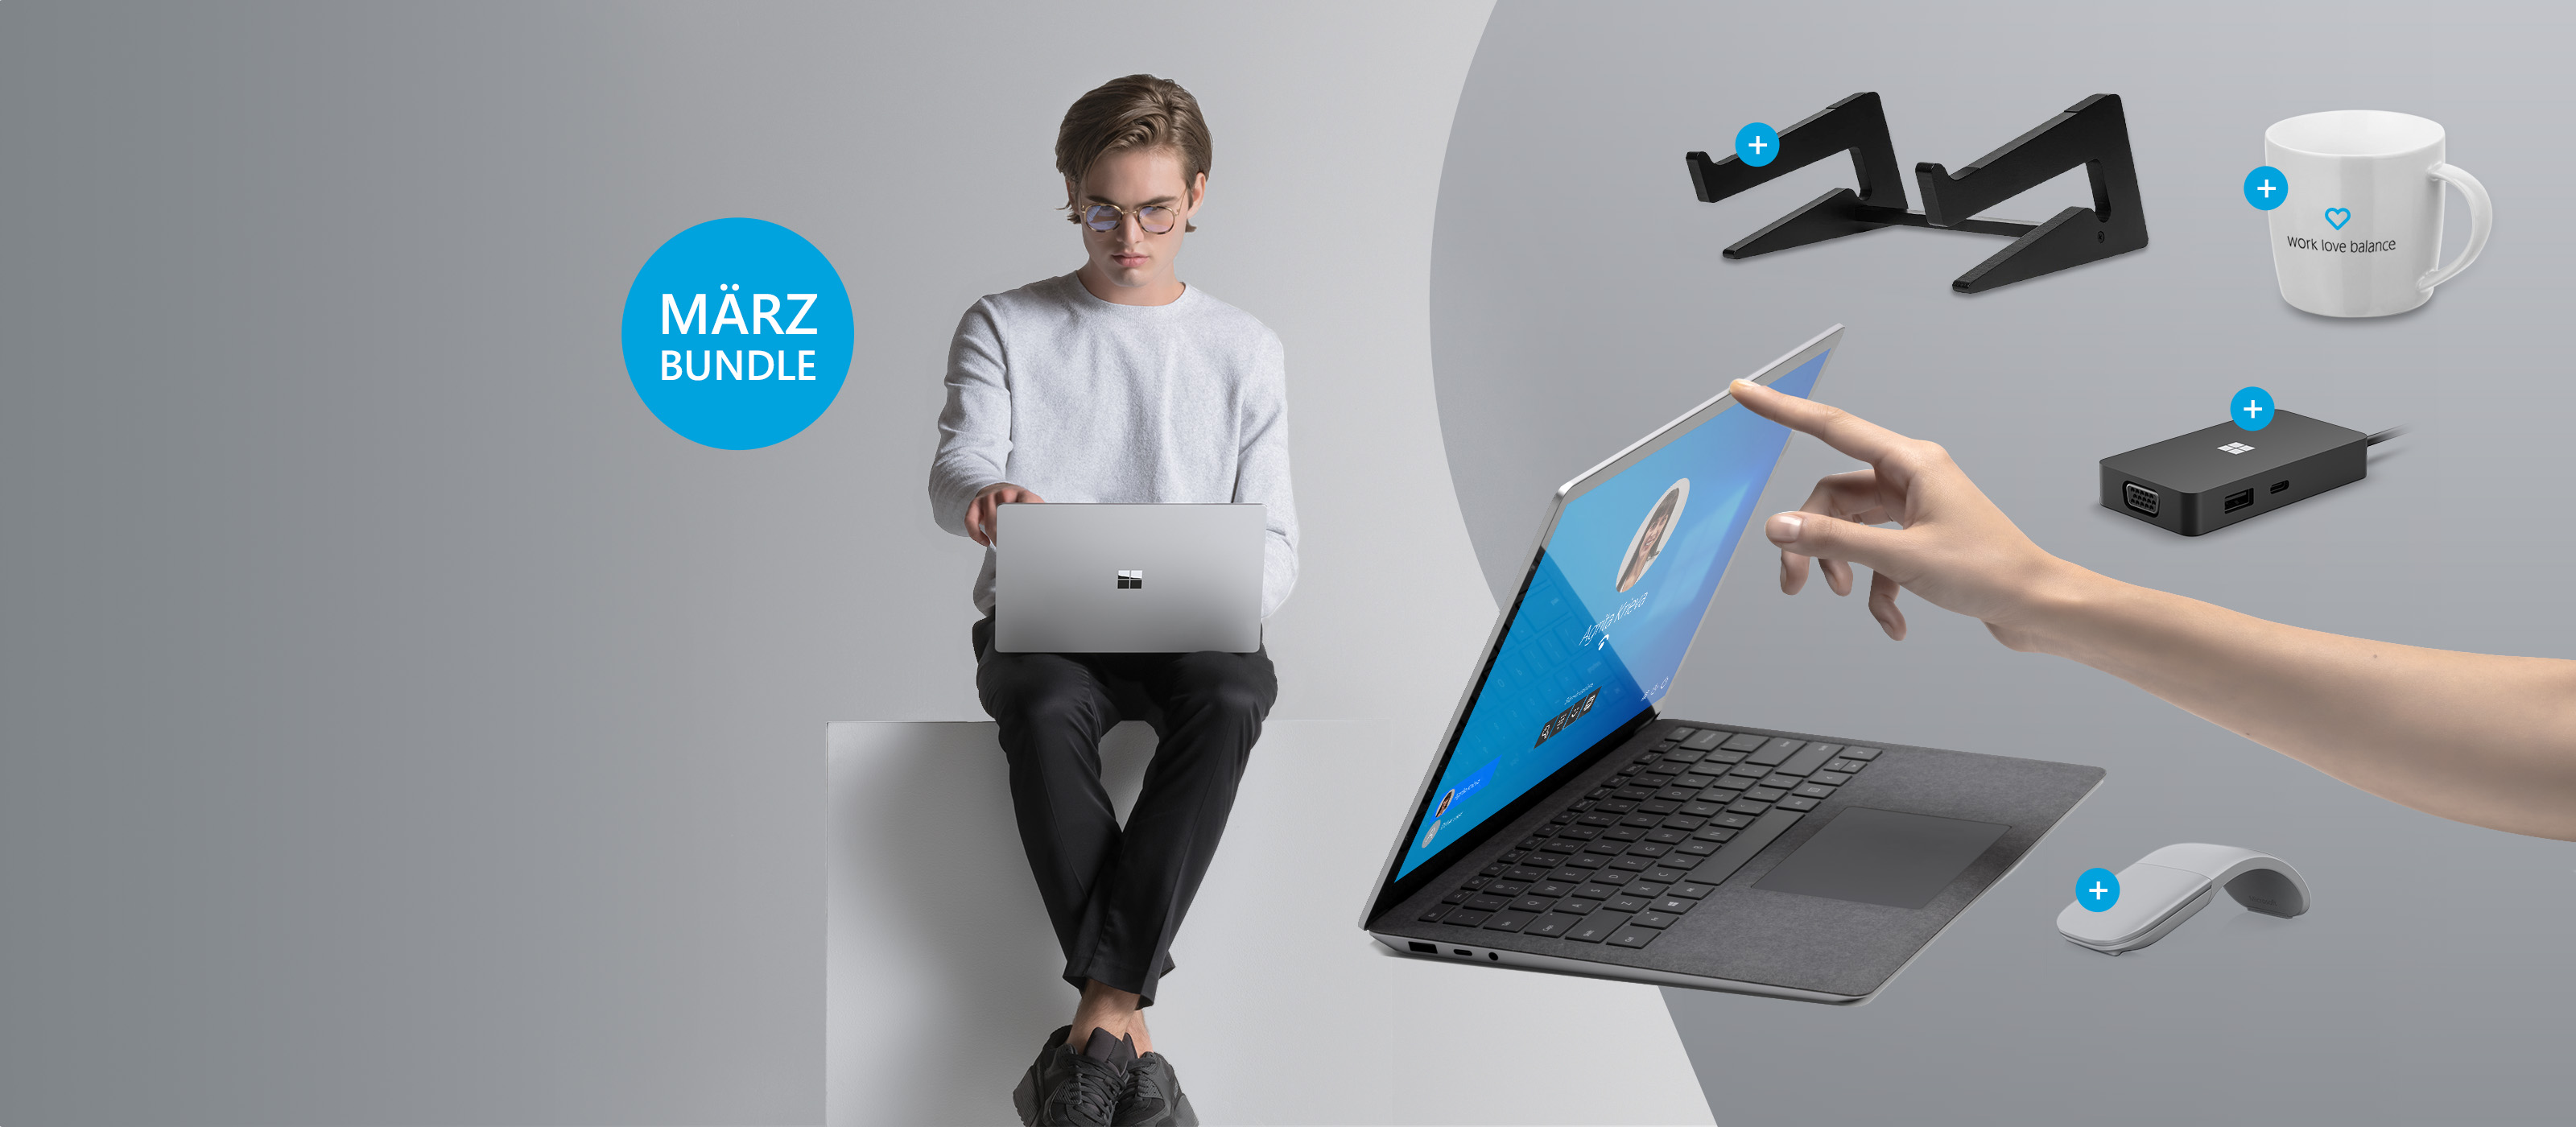 Der Surface Laptop 4 ist vor einem jungen Mann platziert welcher den Surface Laptop 4 nutzt